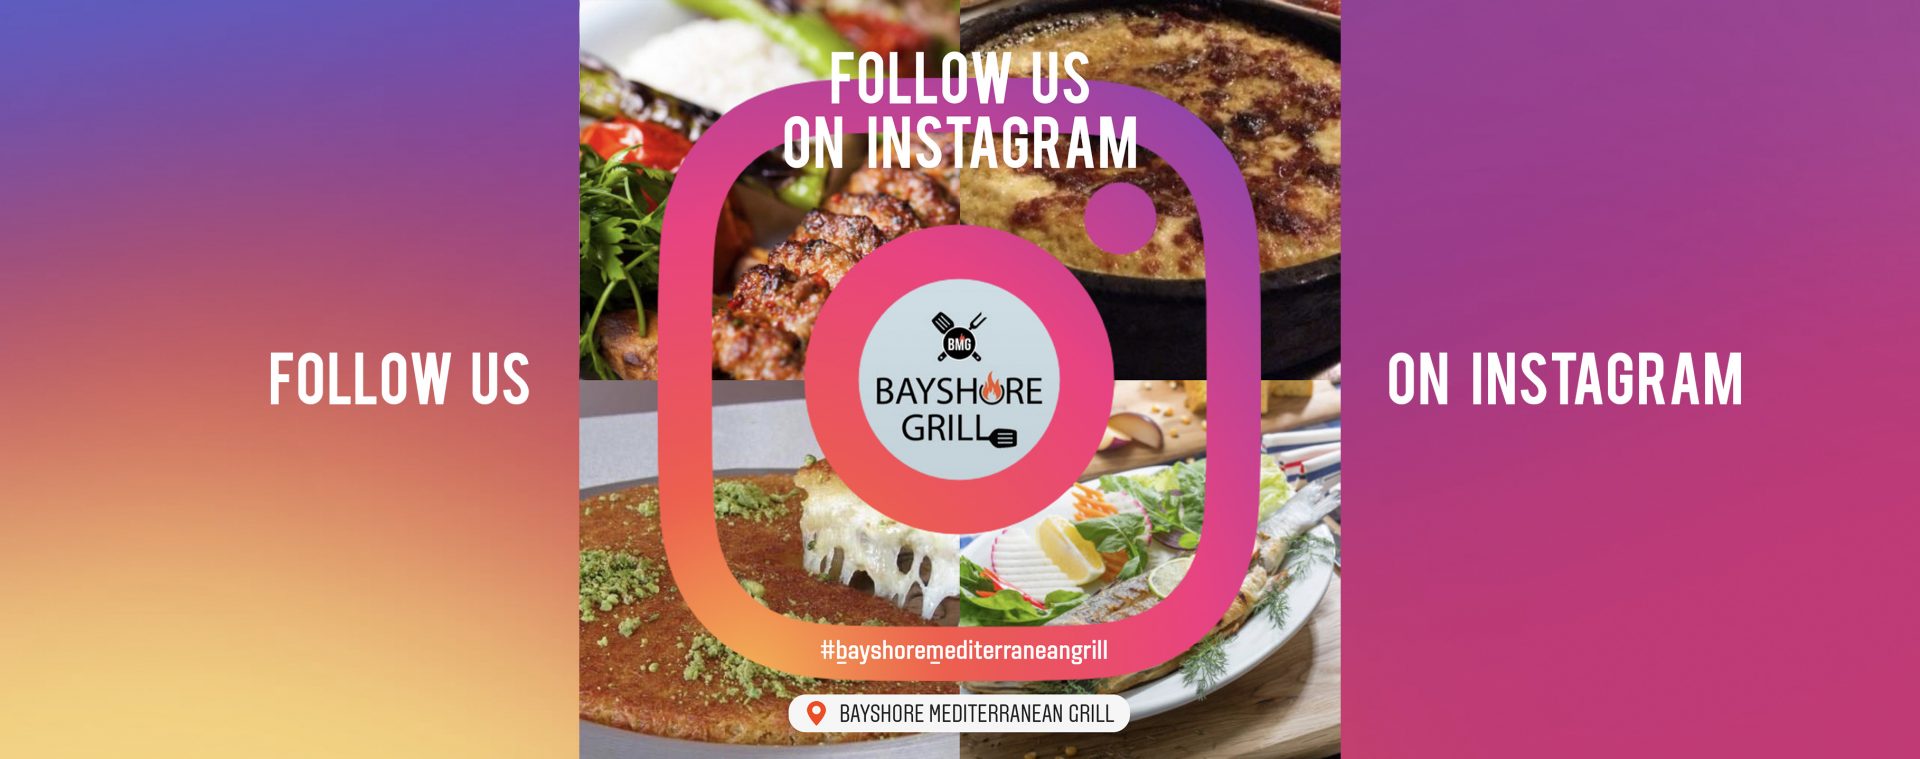 Bayshore Mediterranean Grill Instagram